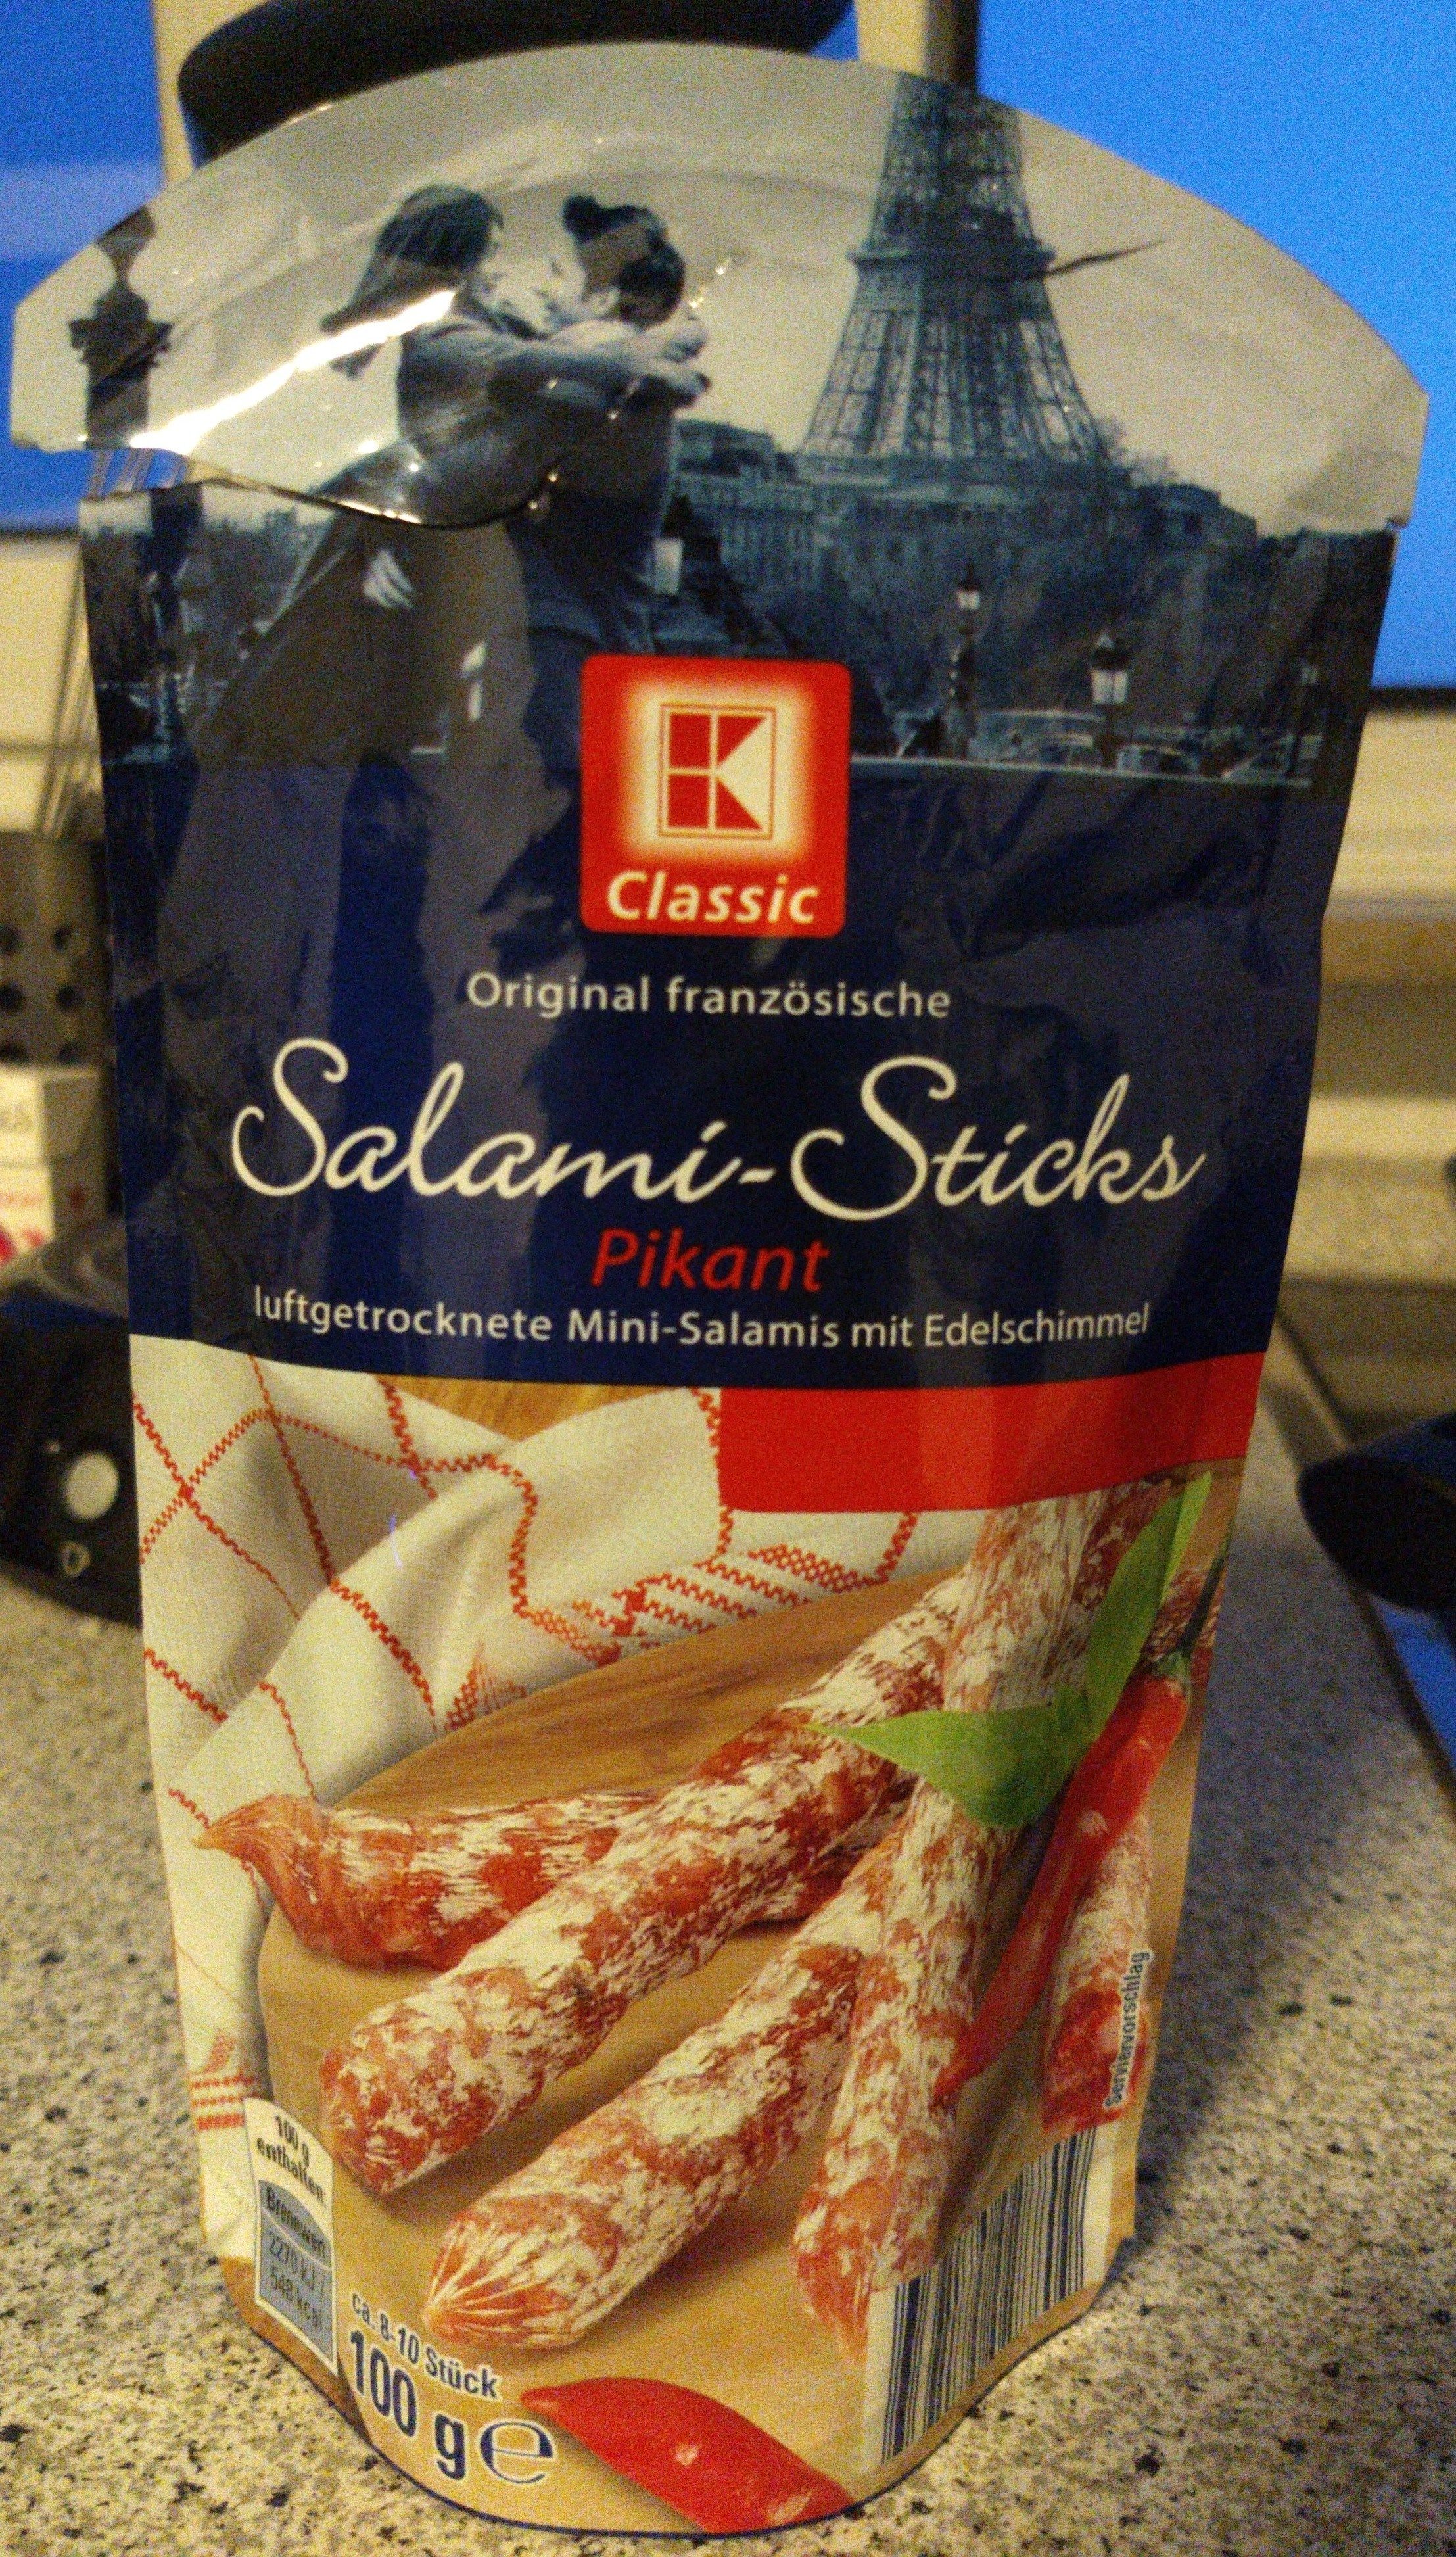 Original französische Salami-Sticks Pikant - Product